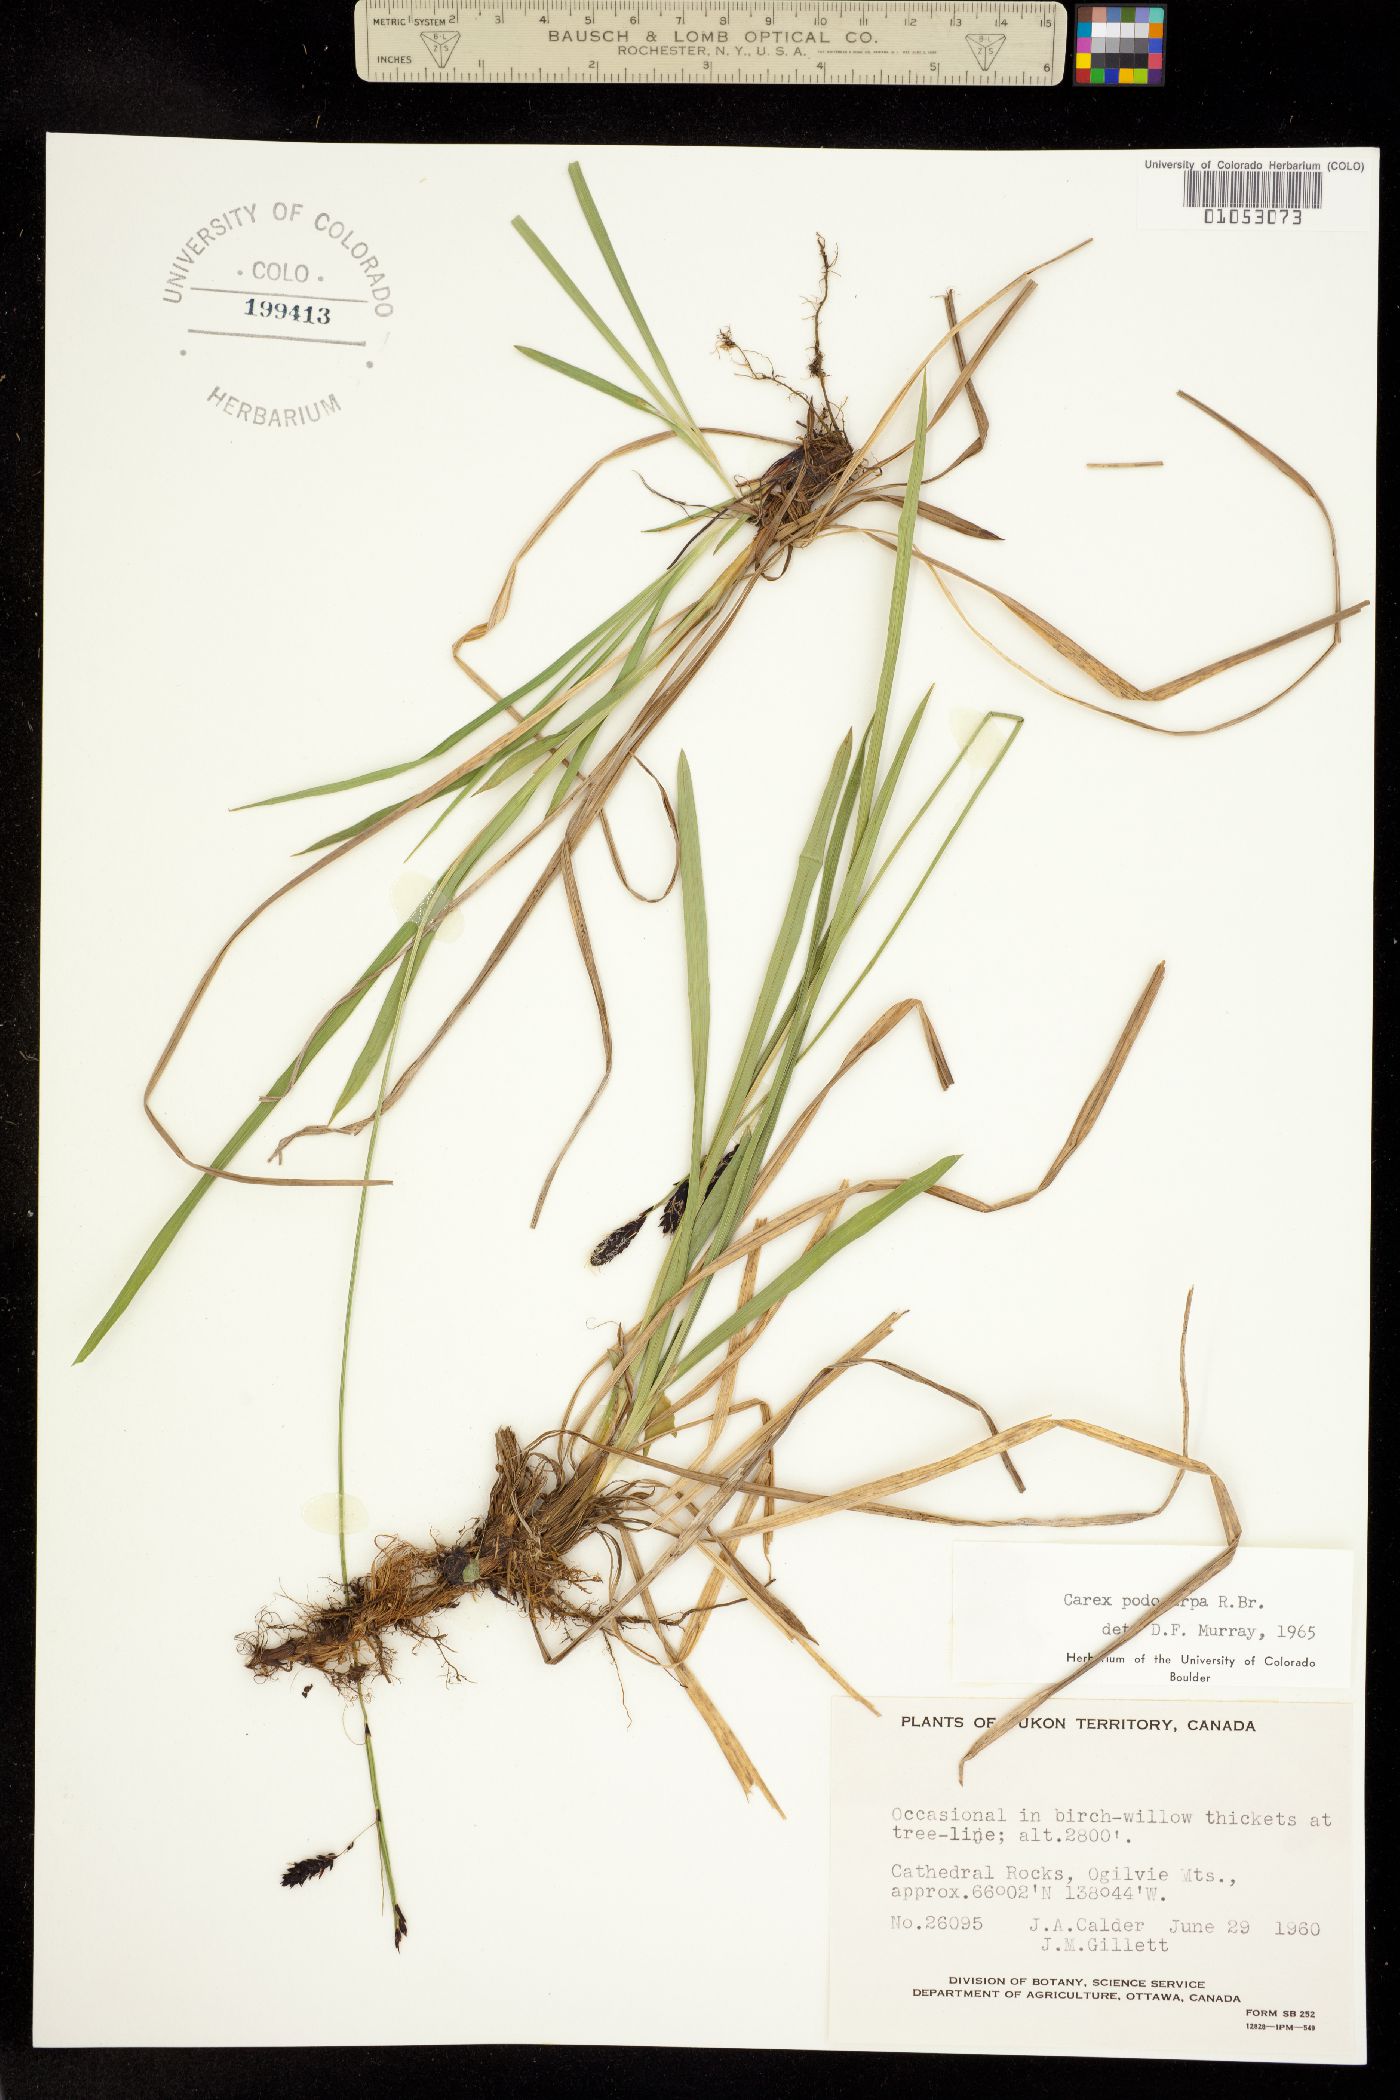 Carex podocarpa image